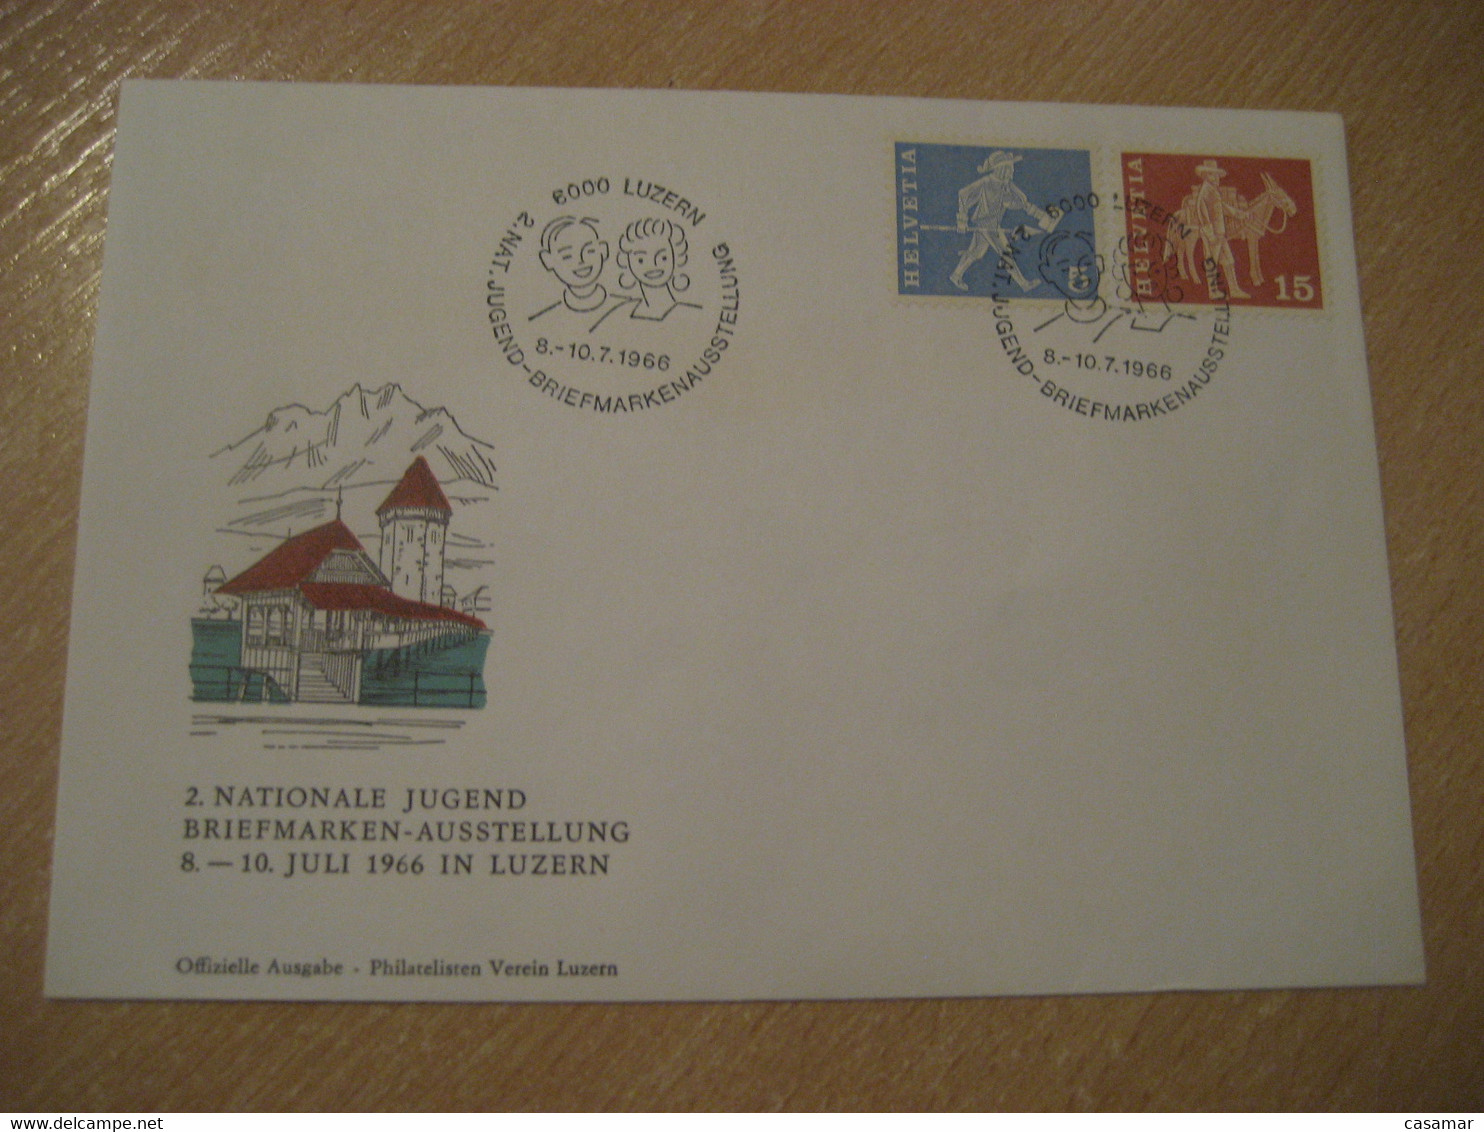 LUZERN 1966 Donkey Donkeys Stamp Jugend Briefmarken Cancel Bridge Water Tower Cover SWITZERLAND Lucerne - Anes